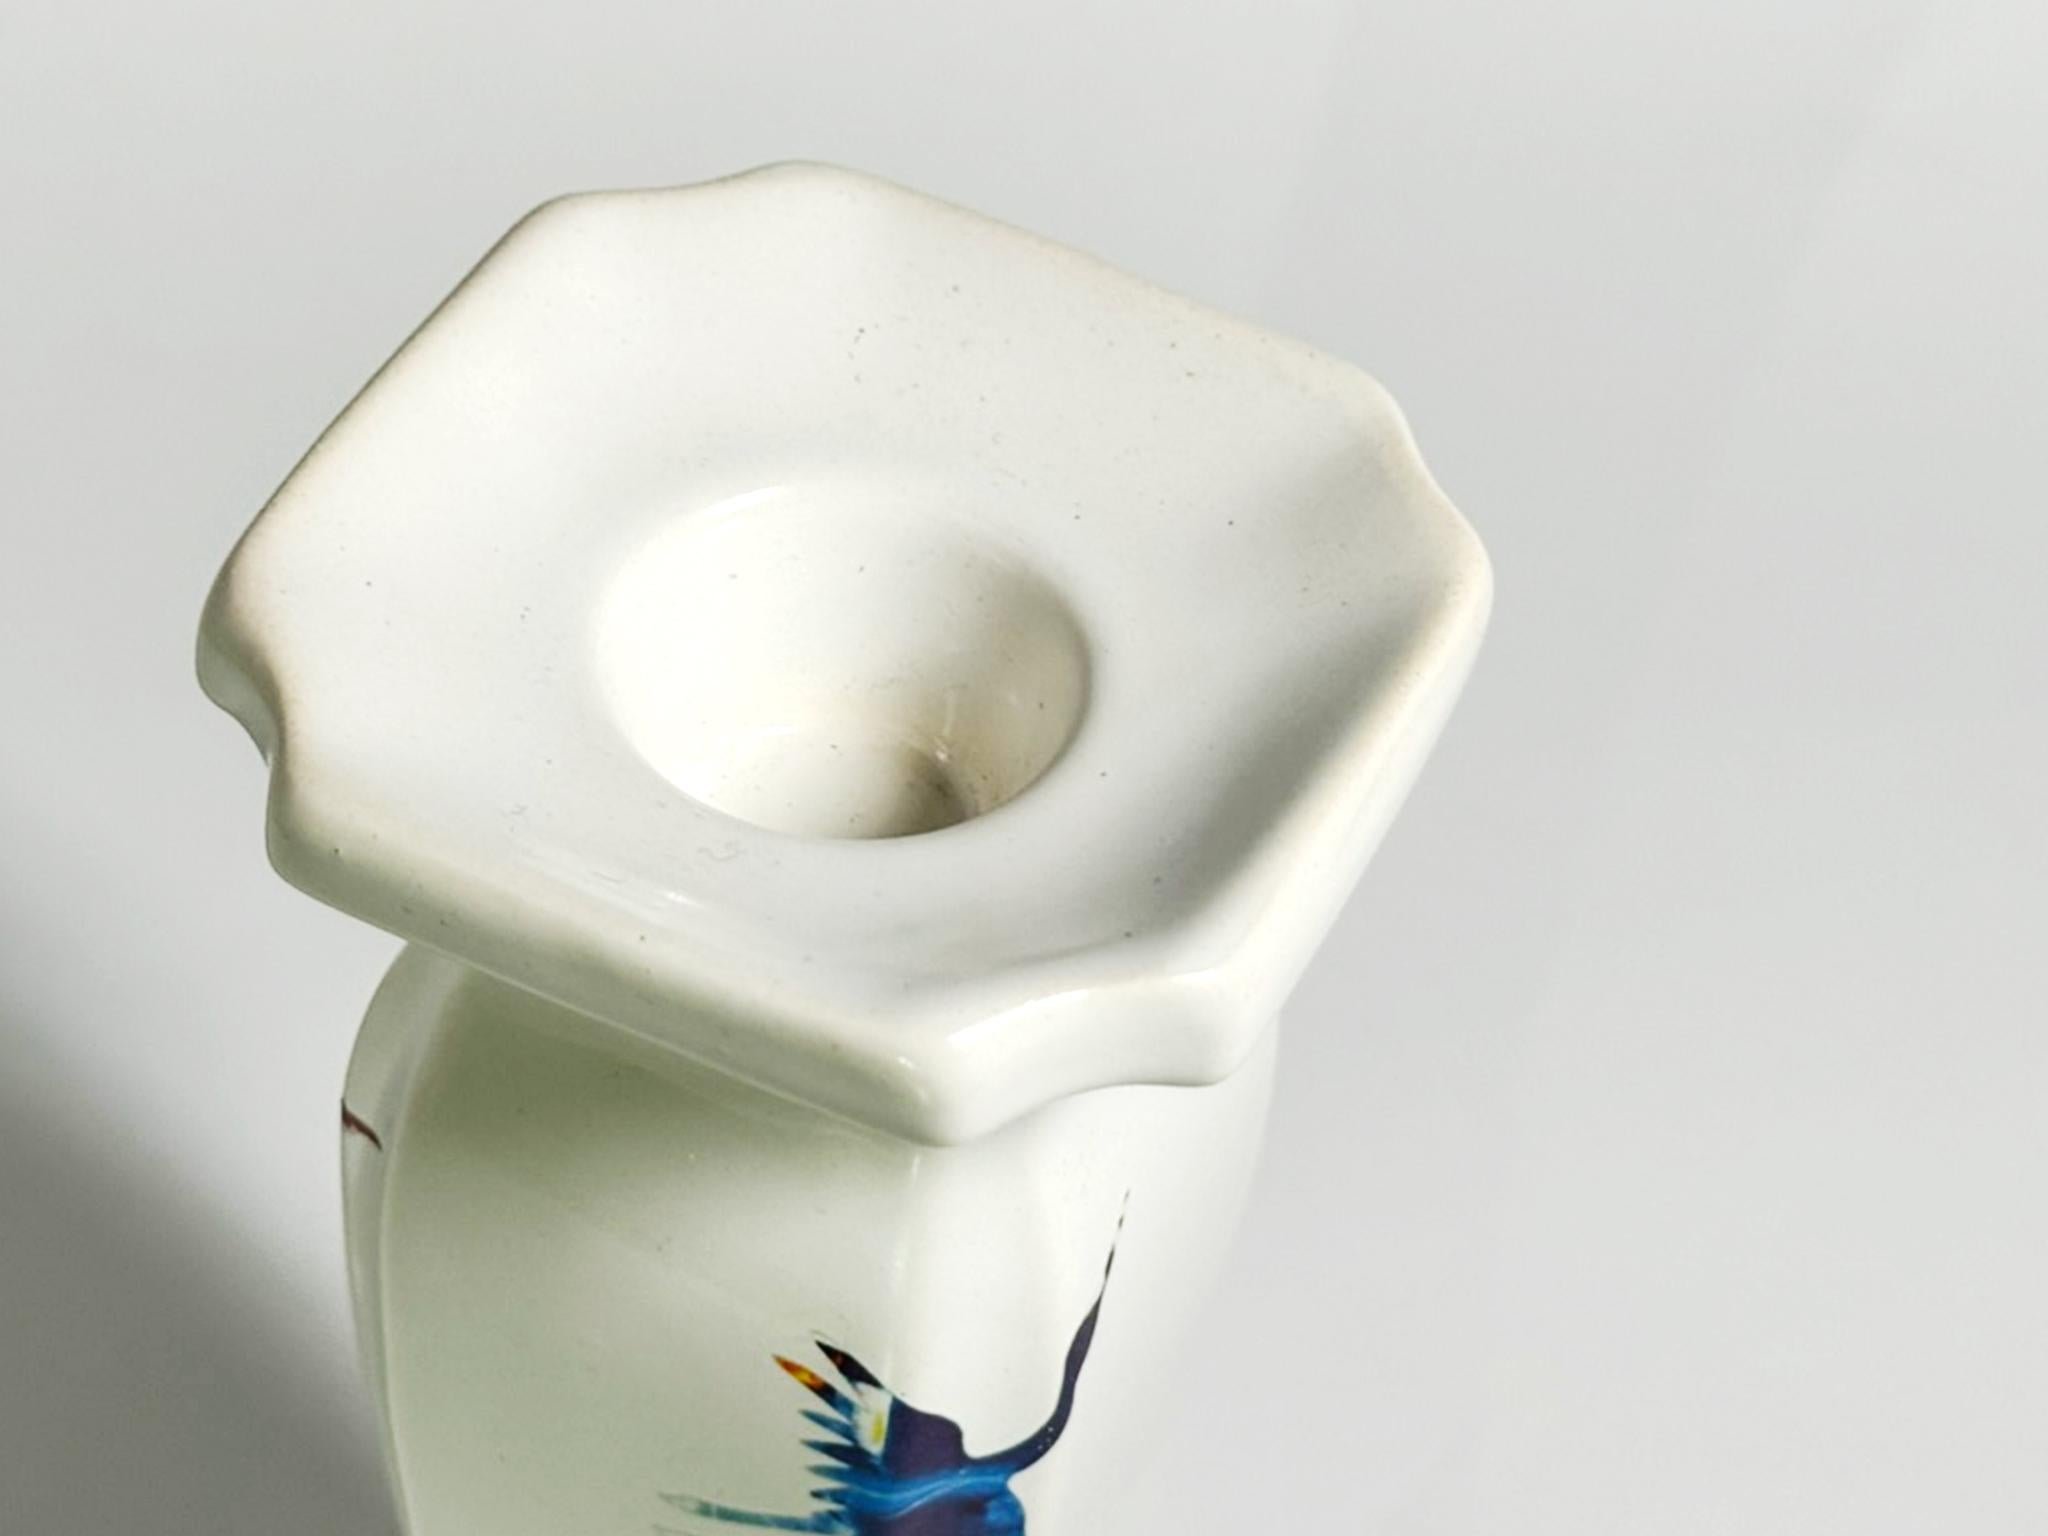 Störung #02, 2023 von Yongwon Noh
Aus der Serie Glitch
Keramik
Größe: 7,4 Zoll. H x 3.5 in. W x 3.5 in. D
Gewicht: 1kg Unverpackt
Einzigartiges Stück
Signatur auf dem Boden der Vase

Die Glitch-Serie ist eine zeitgenössische Neuinterpretation der